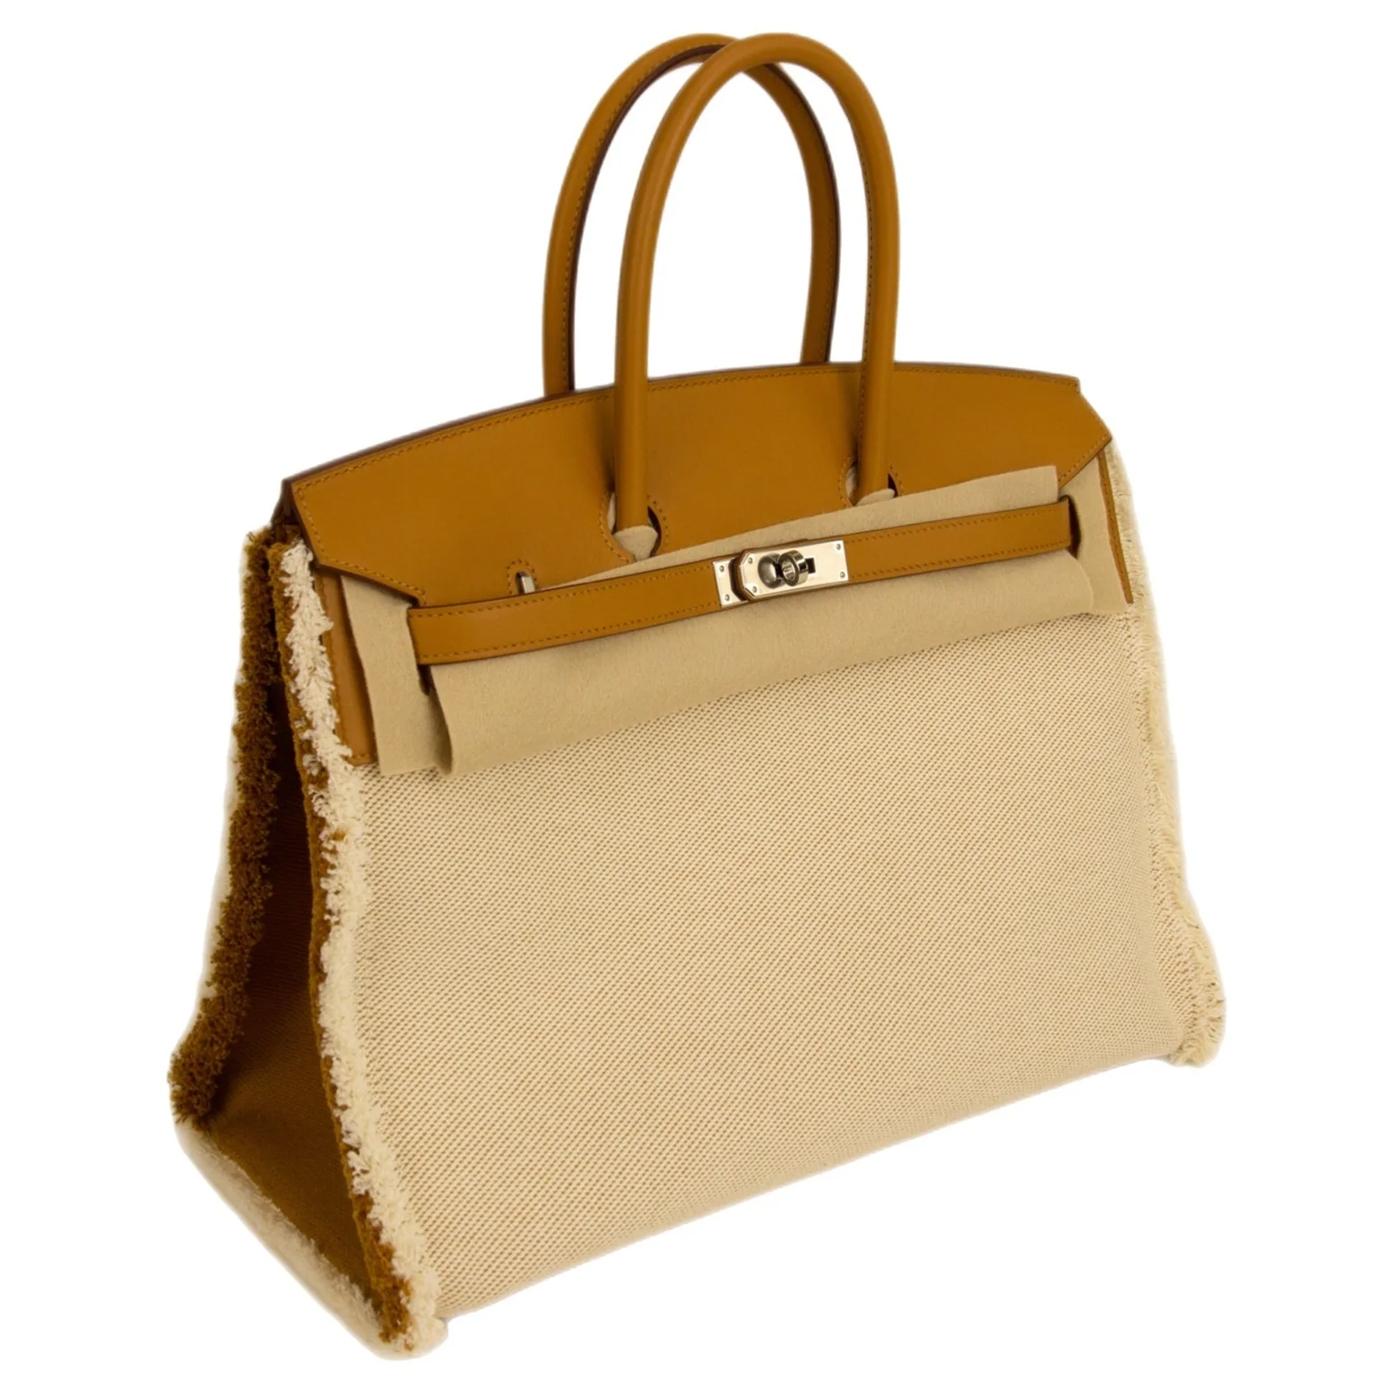 Die Birkin Bag ist eine Damenhandtasche der Luxusmodemarke Hermès, die seit 1984 in Handarbeit hergestellt wird und nach der Schauspielerin Jane Birkin benannt ist. Die Tasche wurde, wie die Kelly Bag, ebenfalls von Hermès in den 1930er Jahren